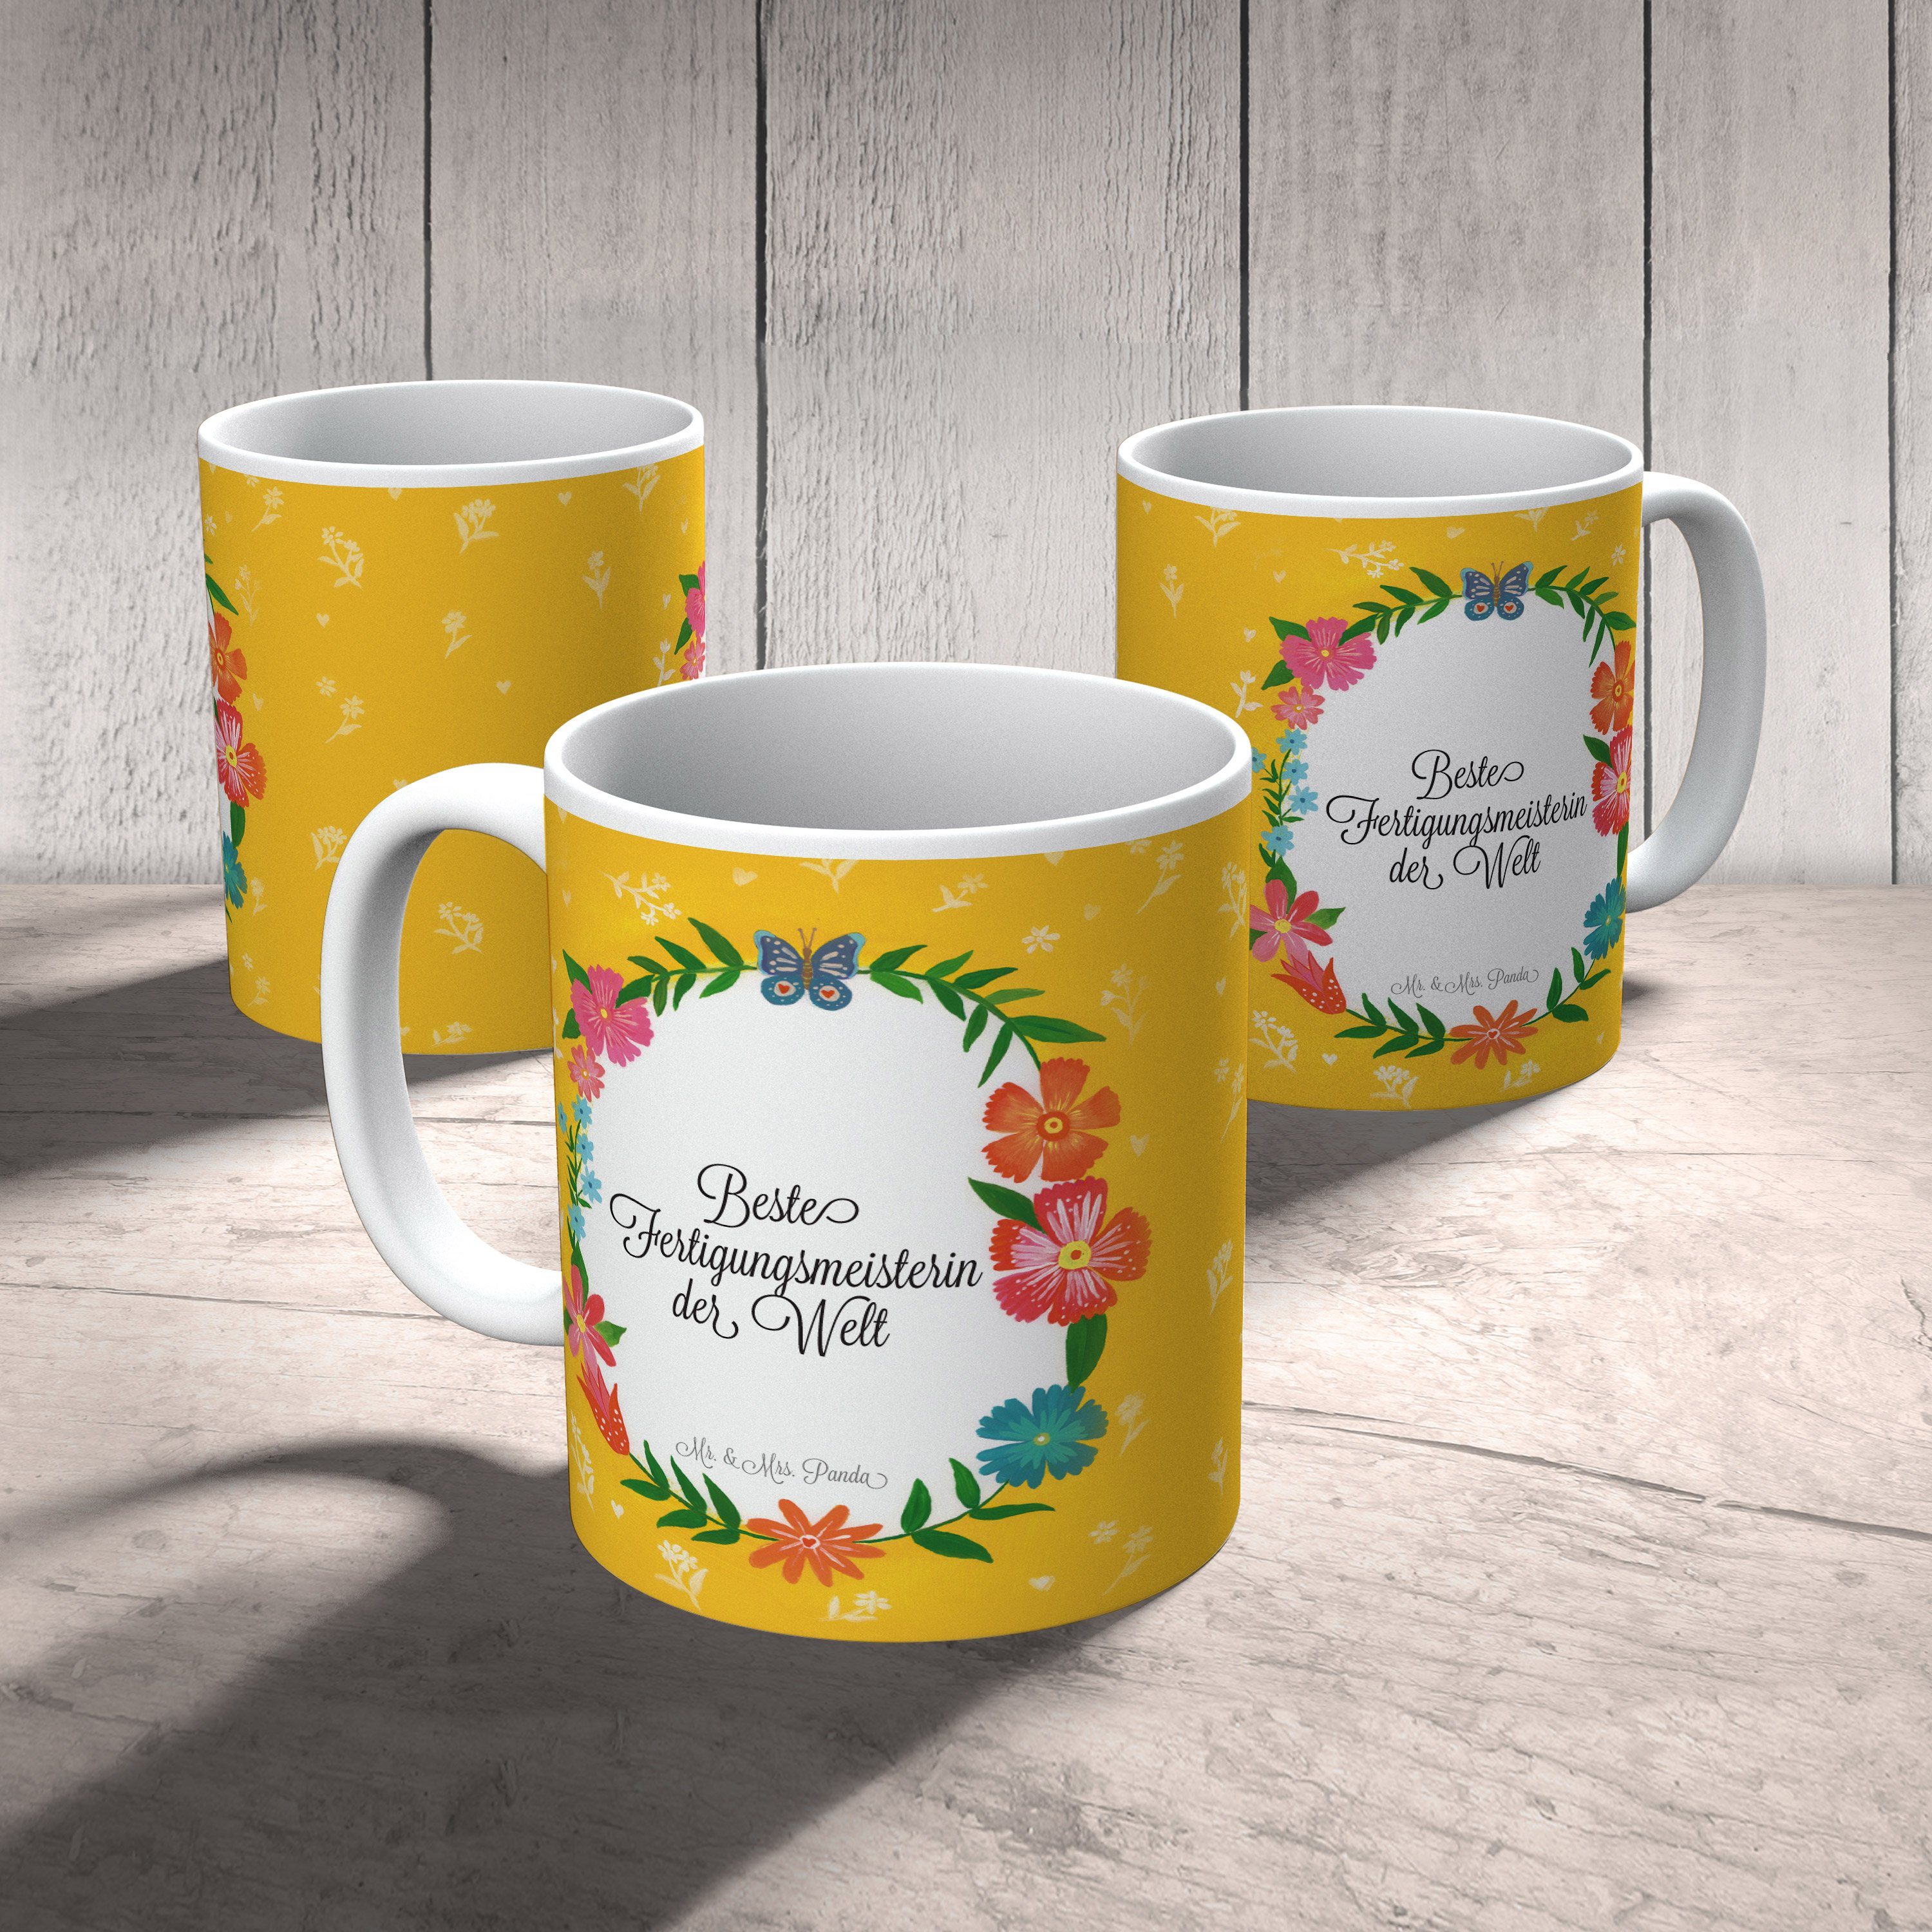 Mr. & Mrs. Panda Tasse, Geschenk Keramik Geschenk, Abschied, Kaffeebeche, - Tasse Fertigungsmeisterin